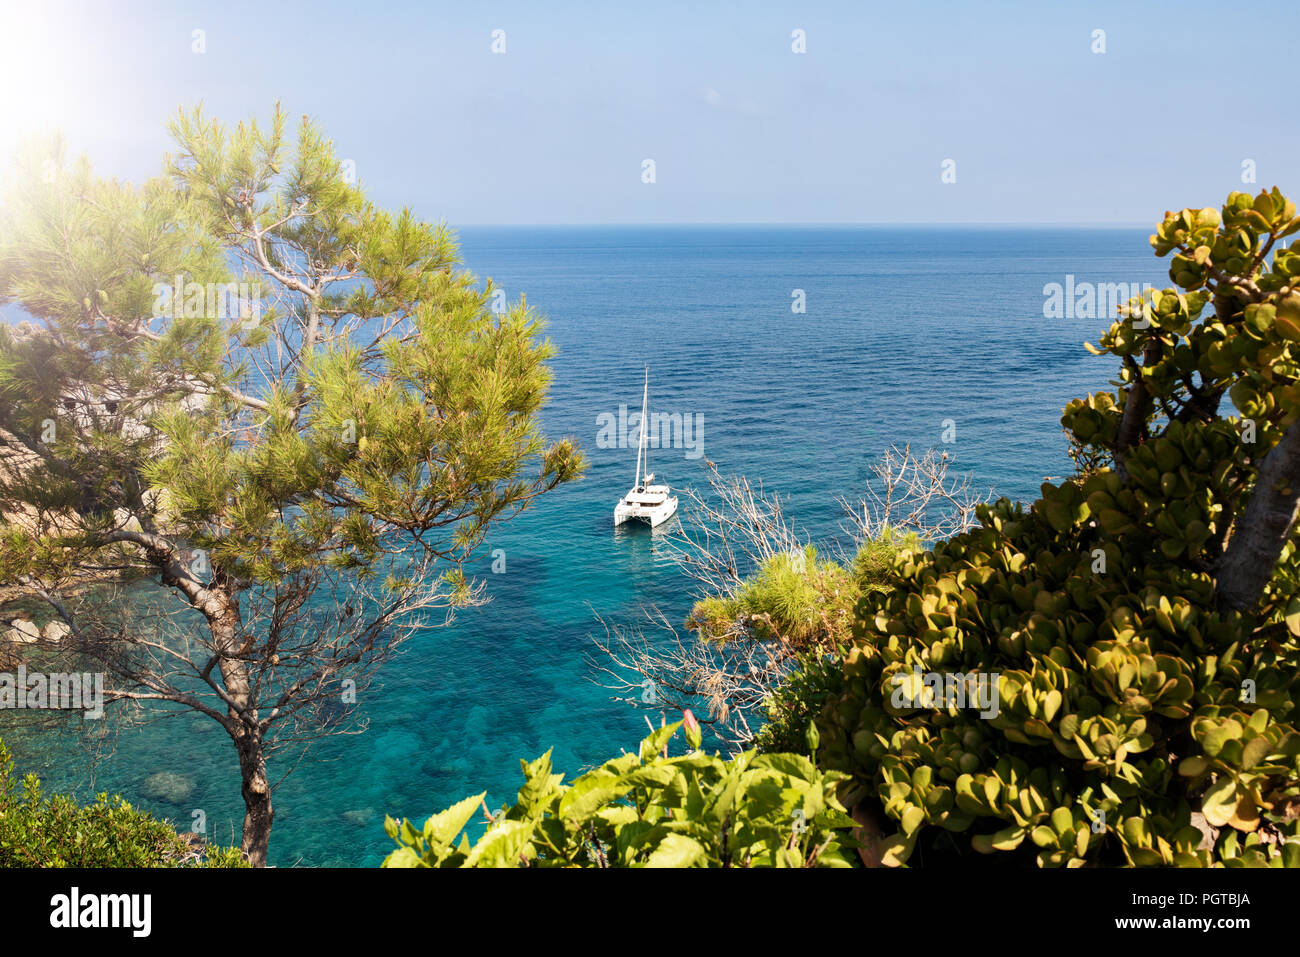 Barca a vela sulle acque turchesi del mar mediterraneo Foto Stock